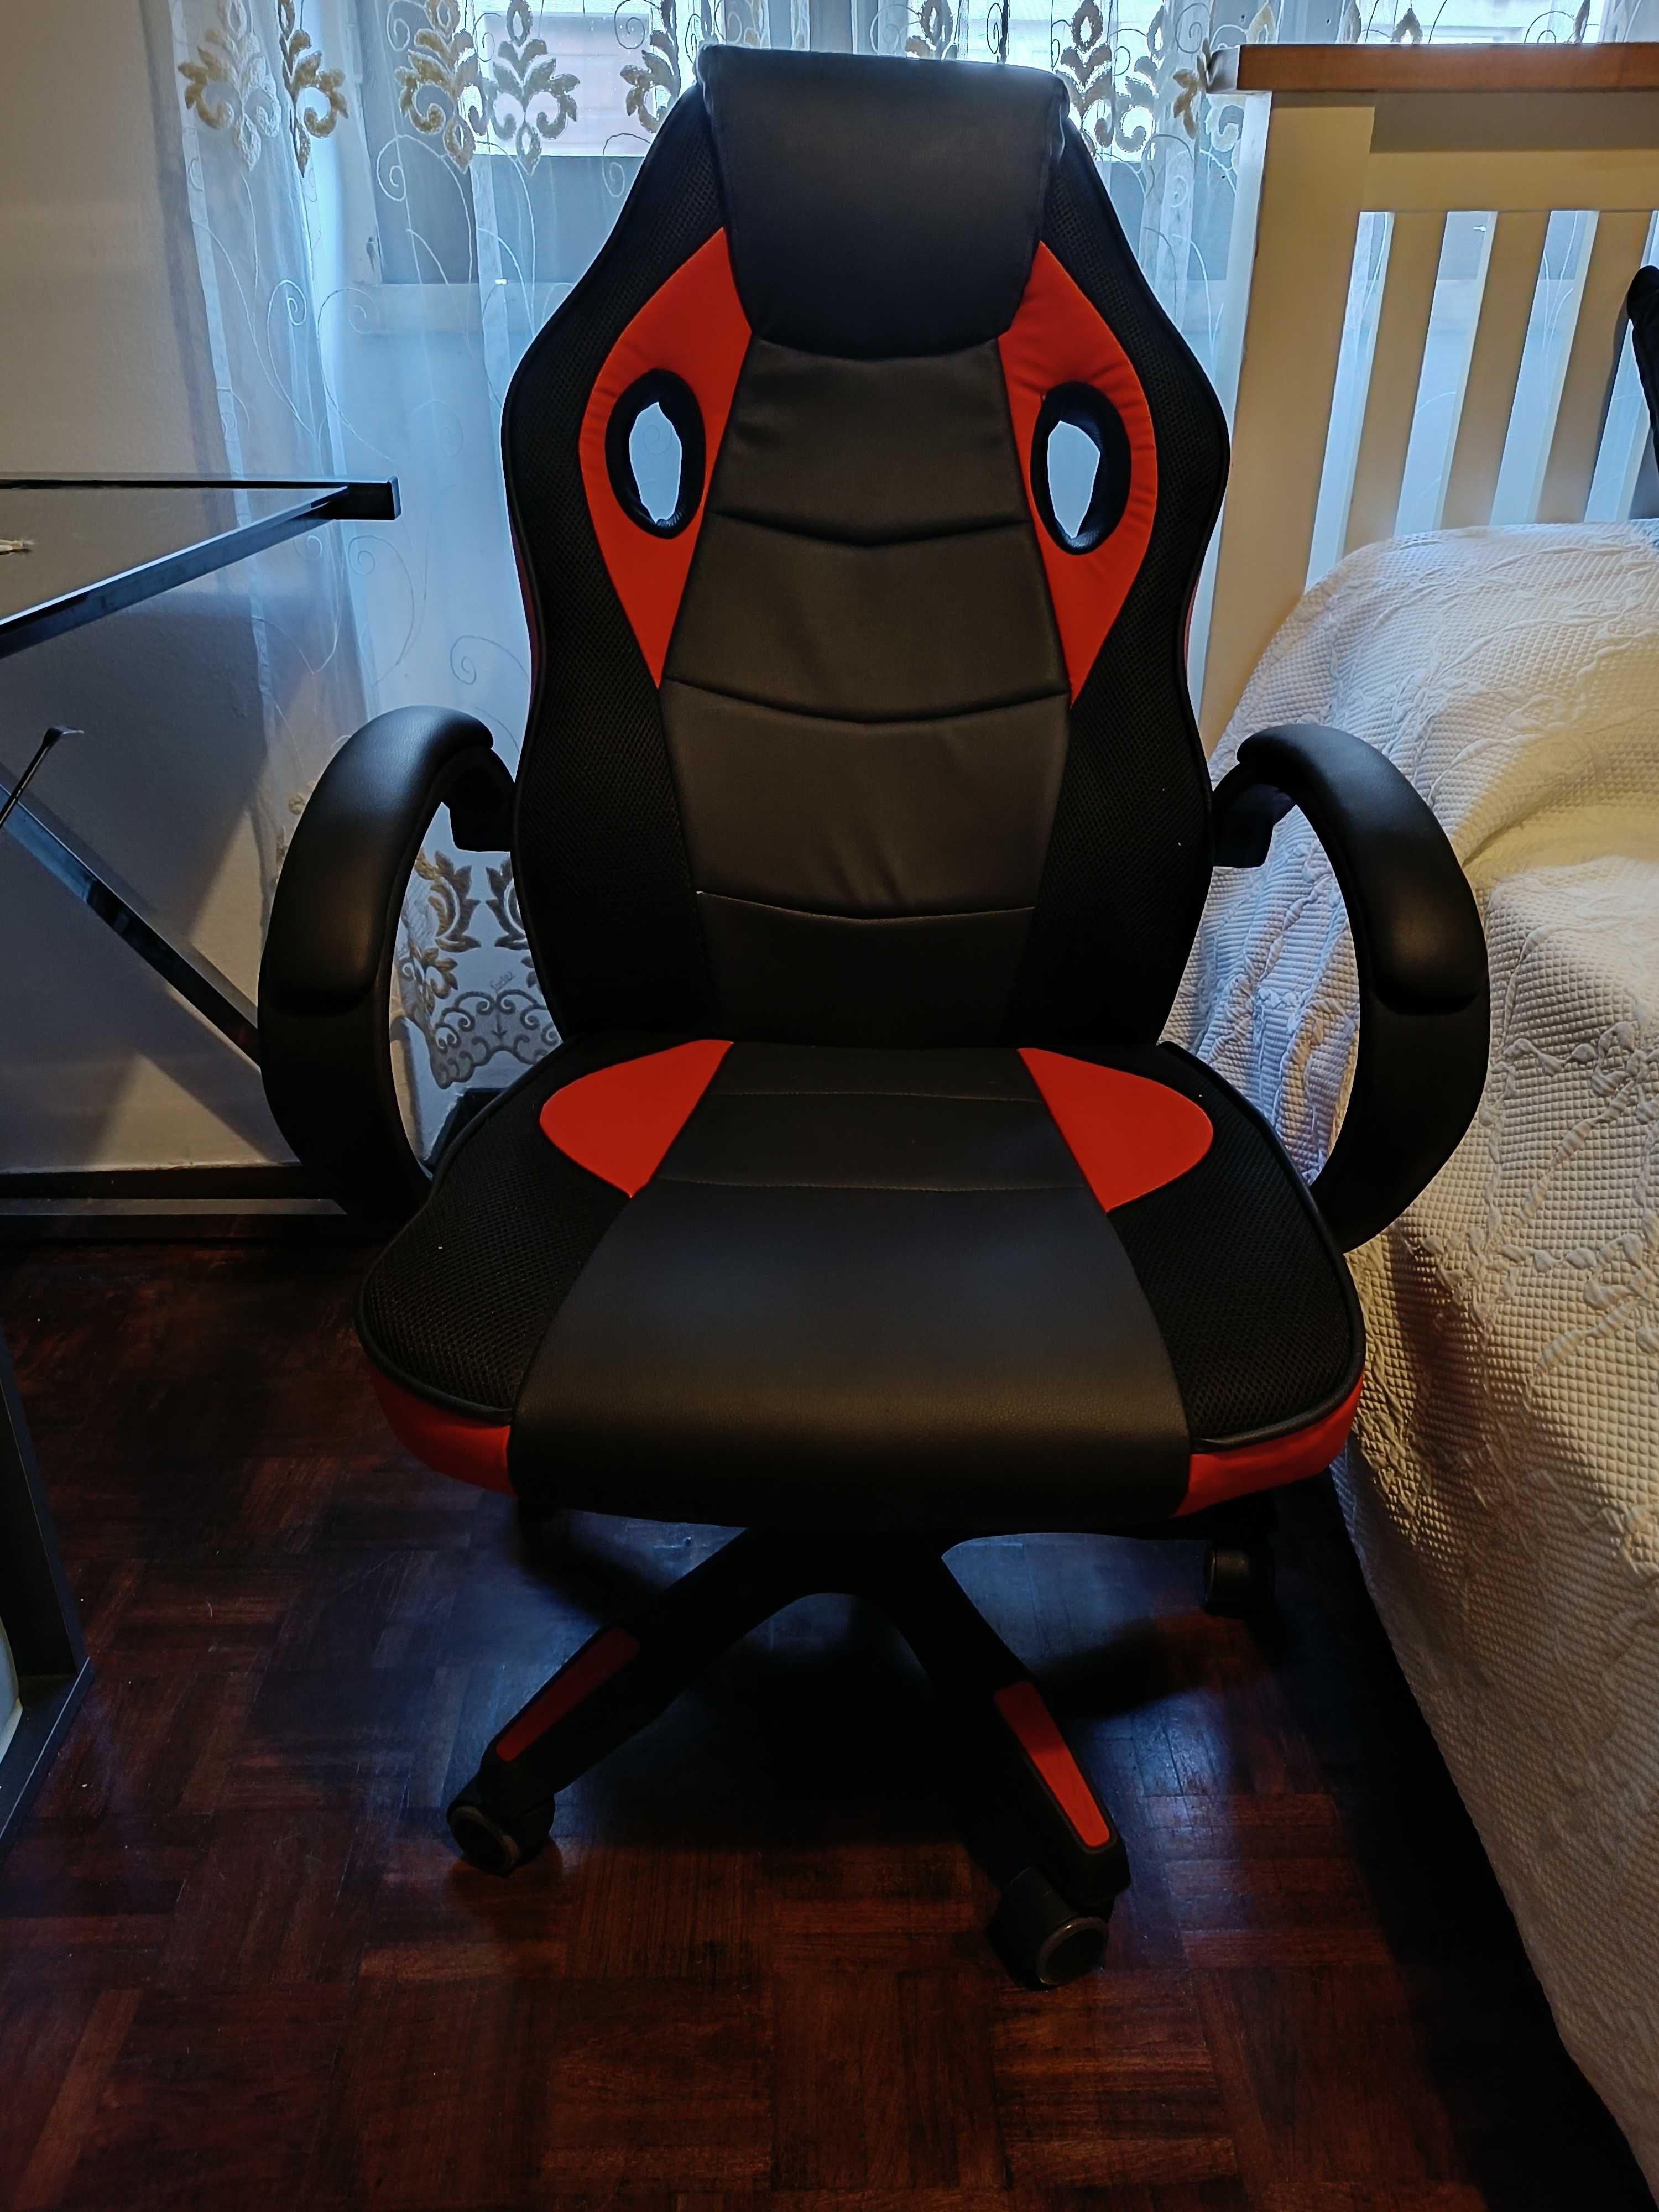 Cadeira gaming nova